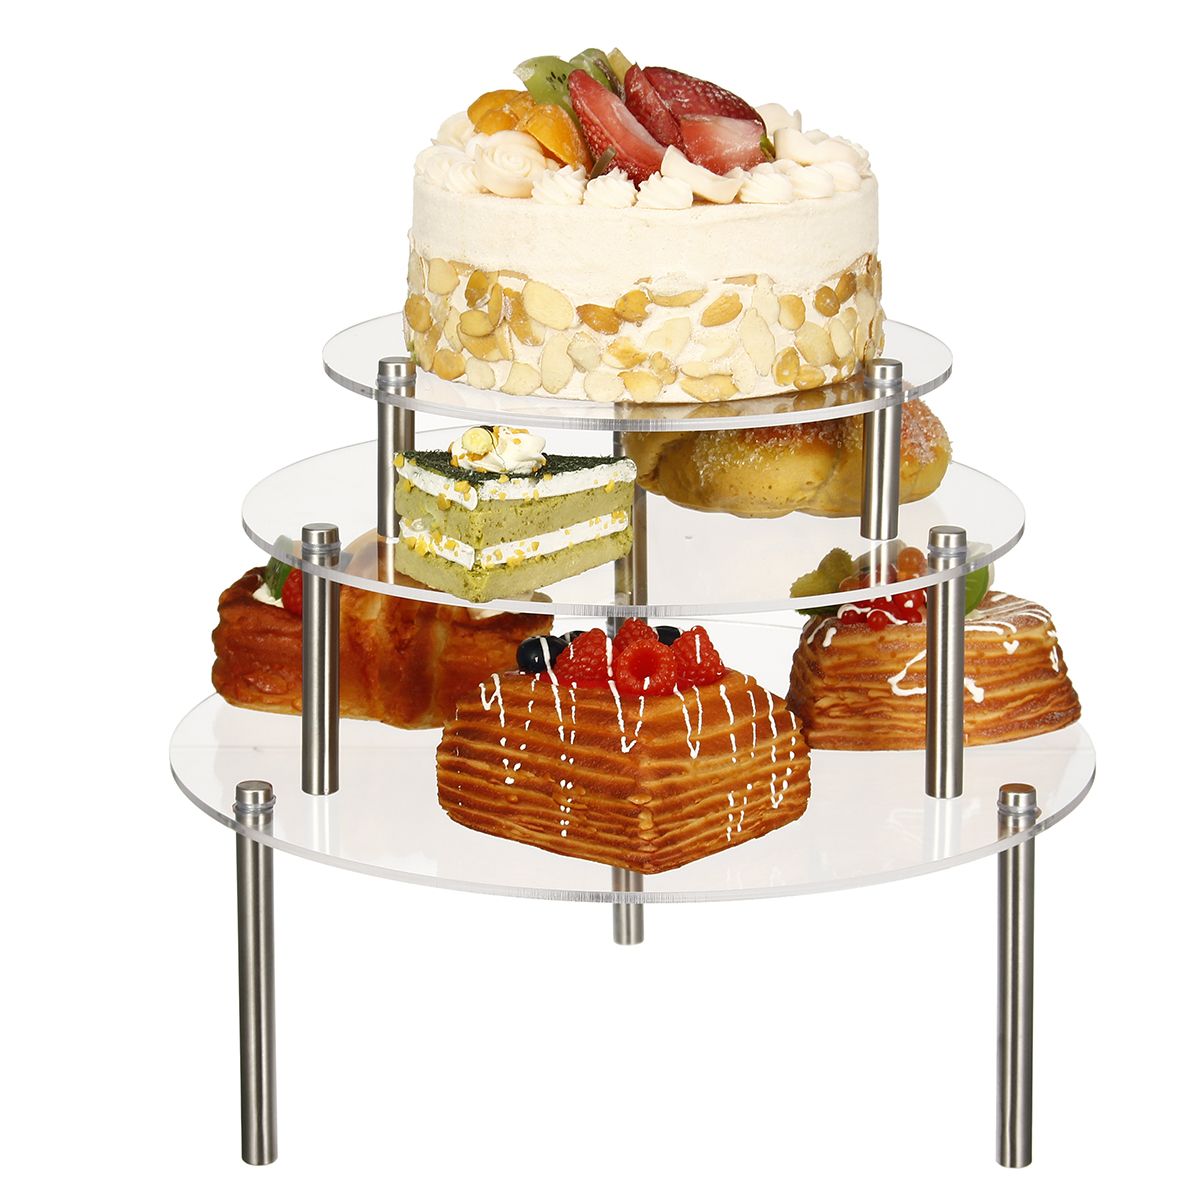 3-Tier-Cake-Stand-Storage-Rack-Wedding-Birthday-Party-Dessert-Display-Holder-Decorations-1563149